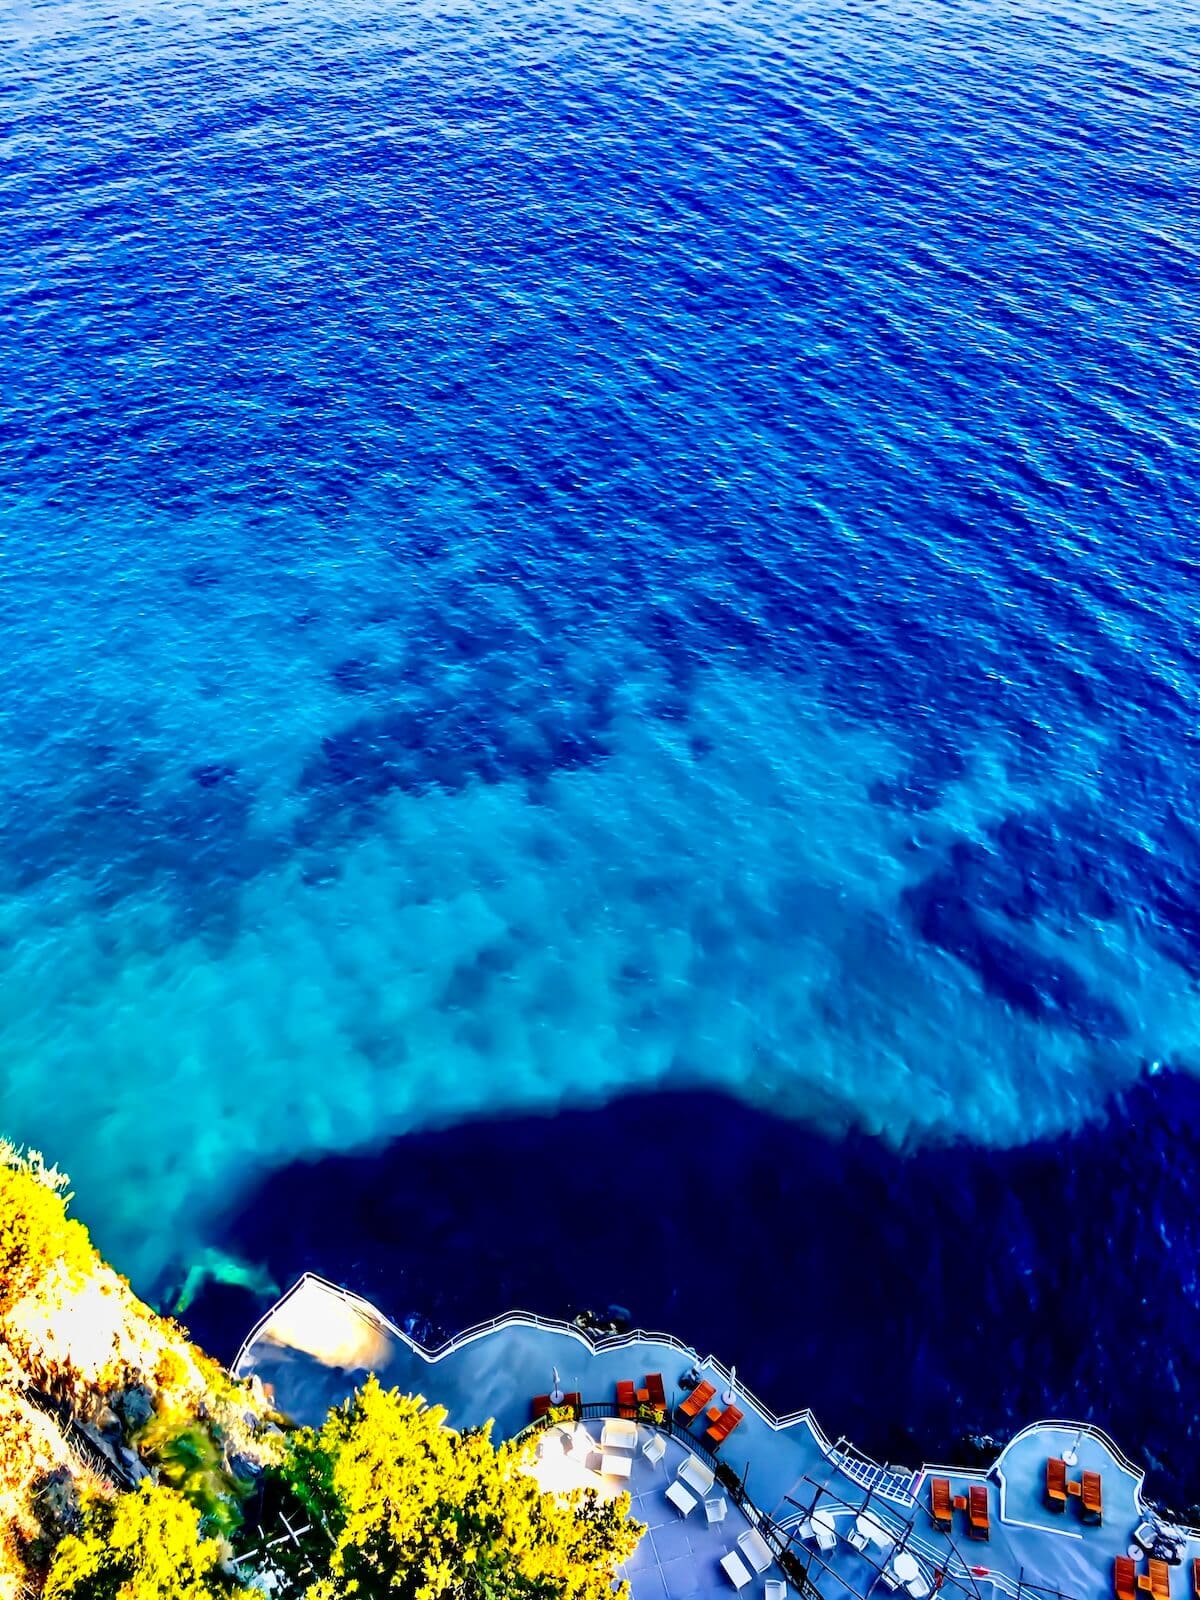 Sea views in amalfi